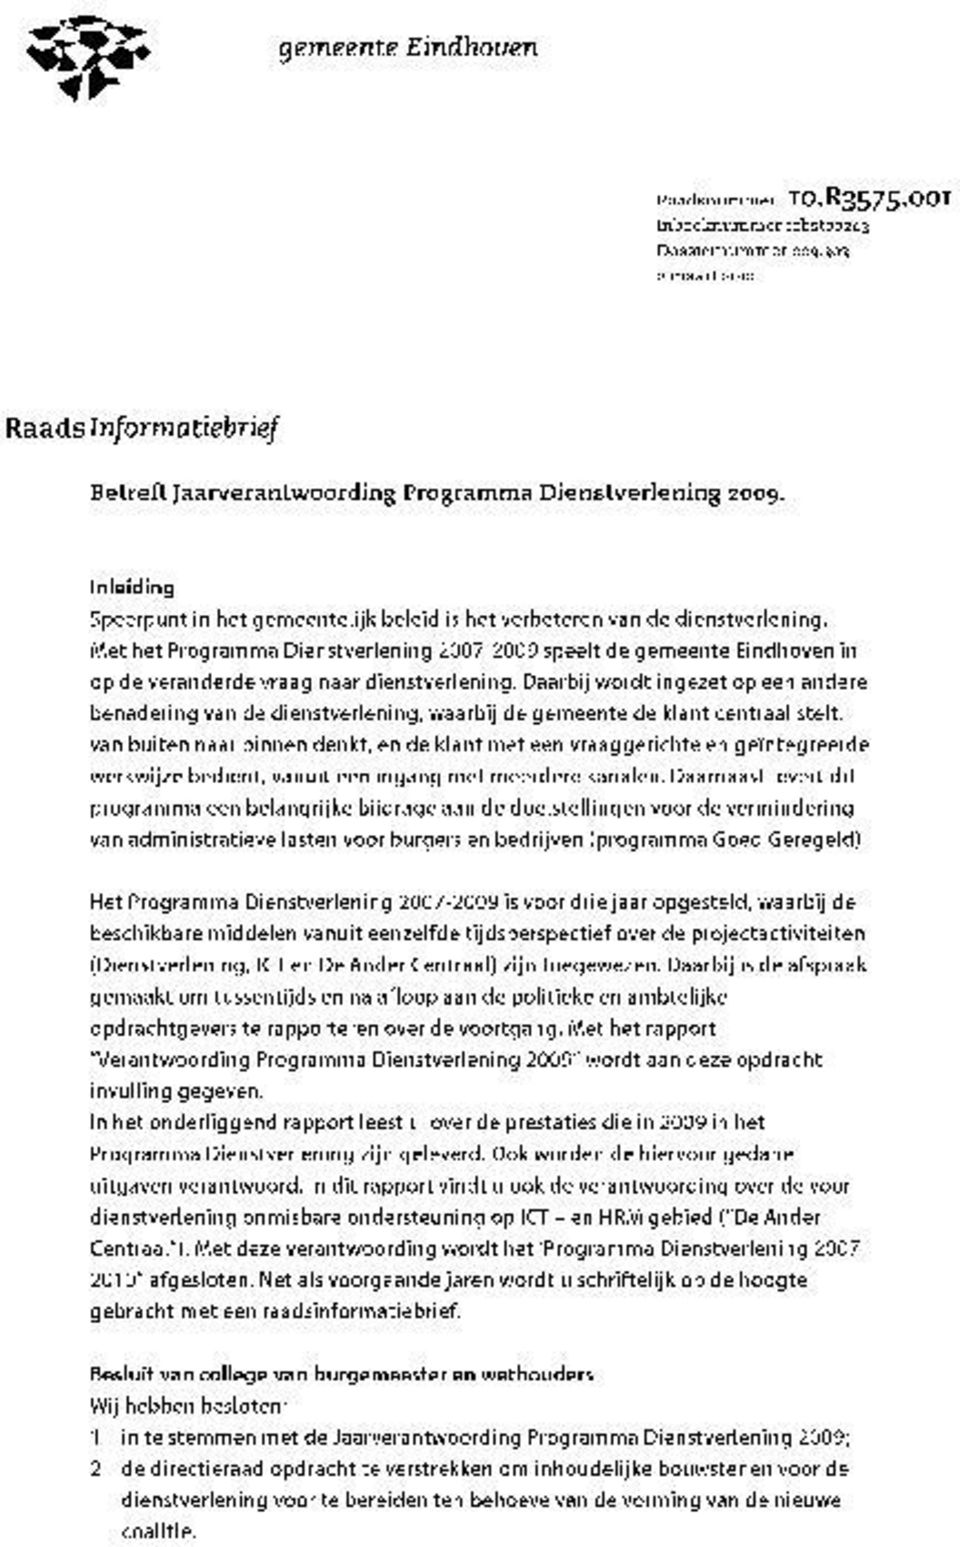 Met het Programma Dienstverlening 2007-2009 speelt de gemeente Eindhoven in op de veranderde vraag naar dienstverlening.